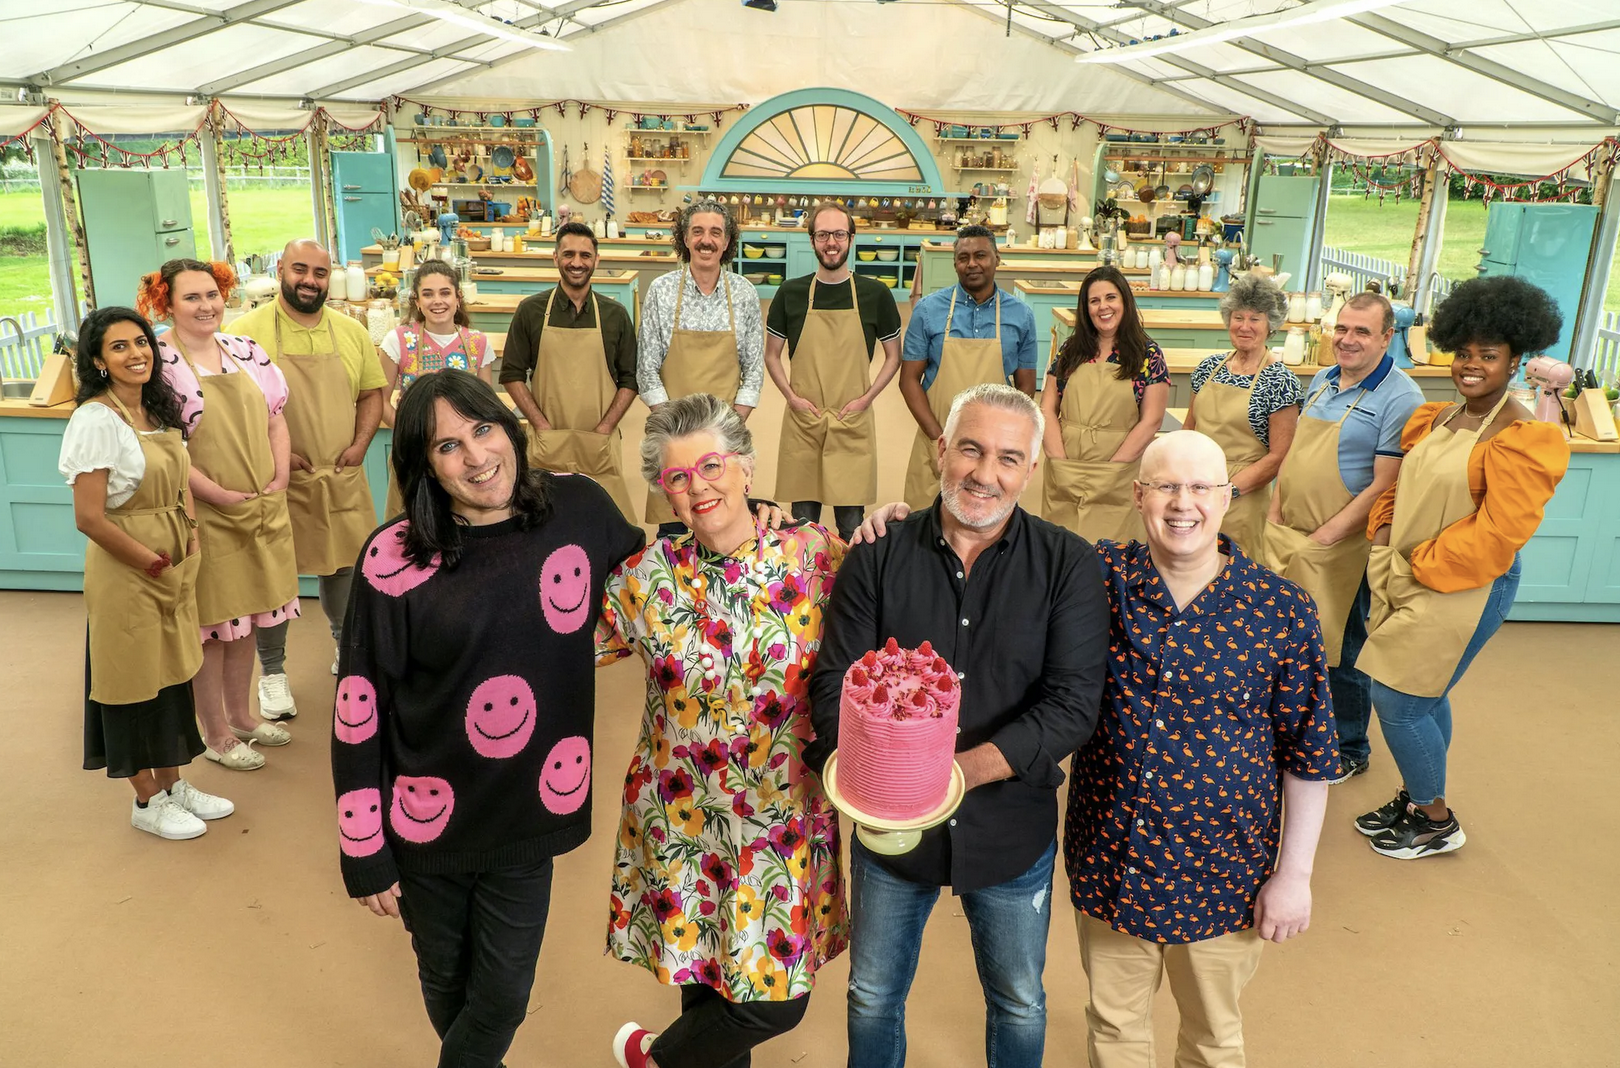 一组英国烘焙大赛第十二季参赛者的合影，评委保罗·好莱坞和普鲁·利斯站在前面，旁边是主持人马特·卢卡斯和诺埃尔·菲尔丁。好莱坞抱着一个大的粉红色多层蛋糕。